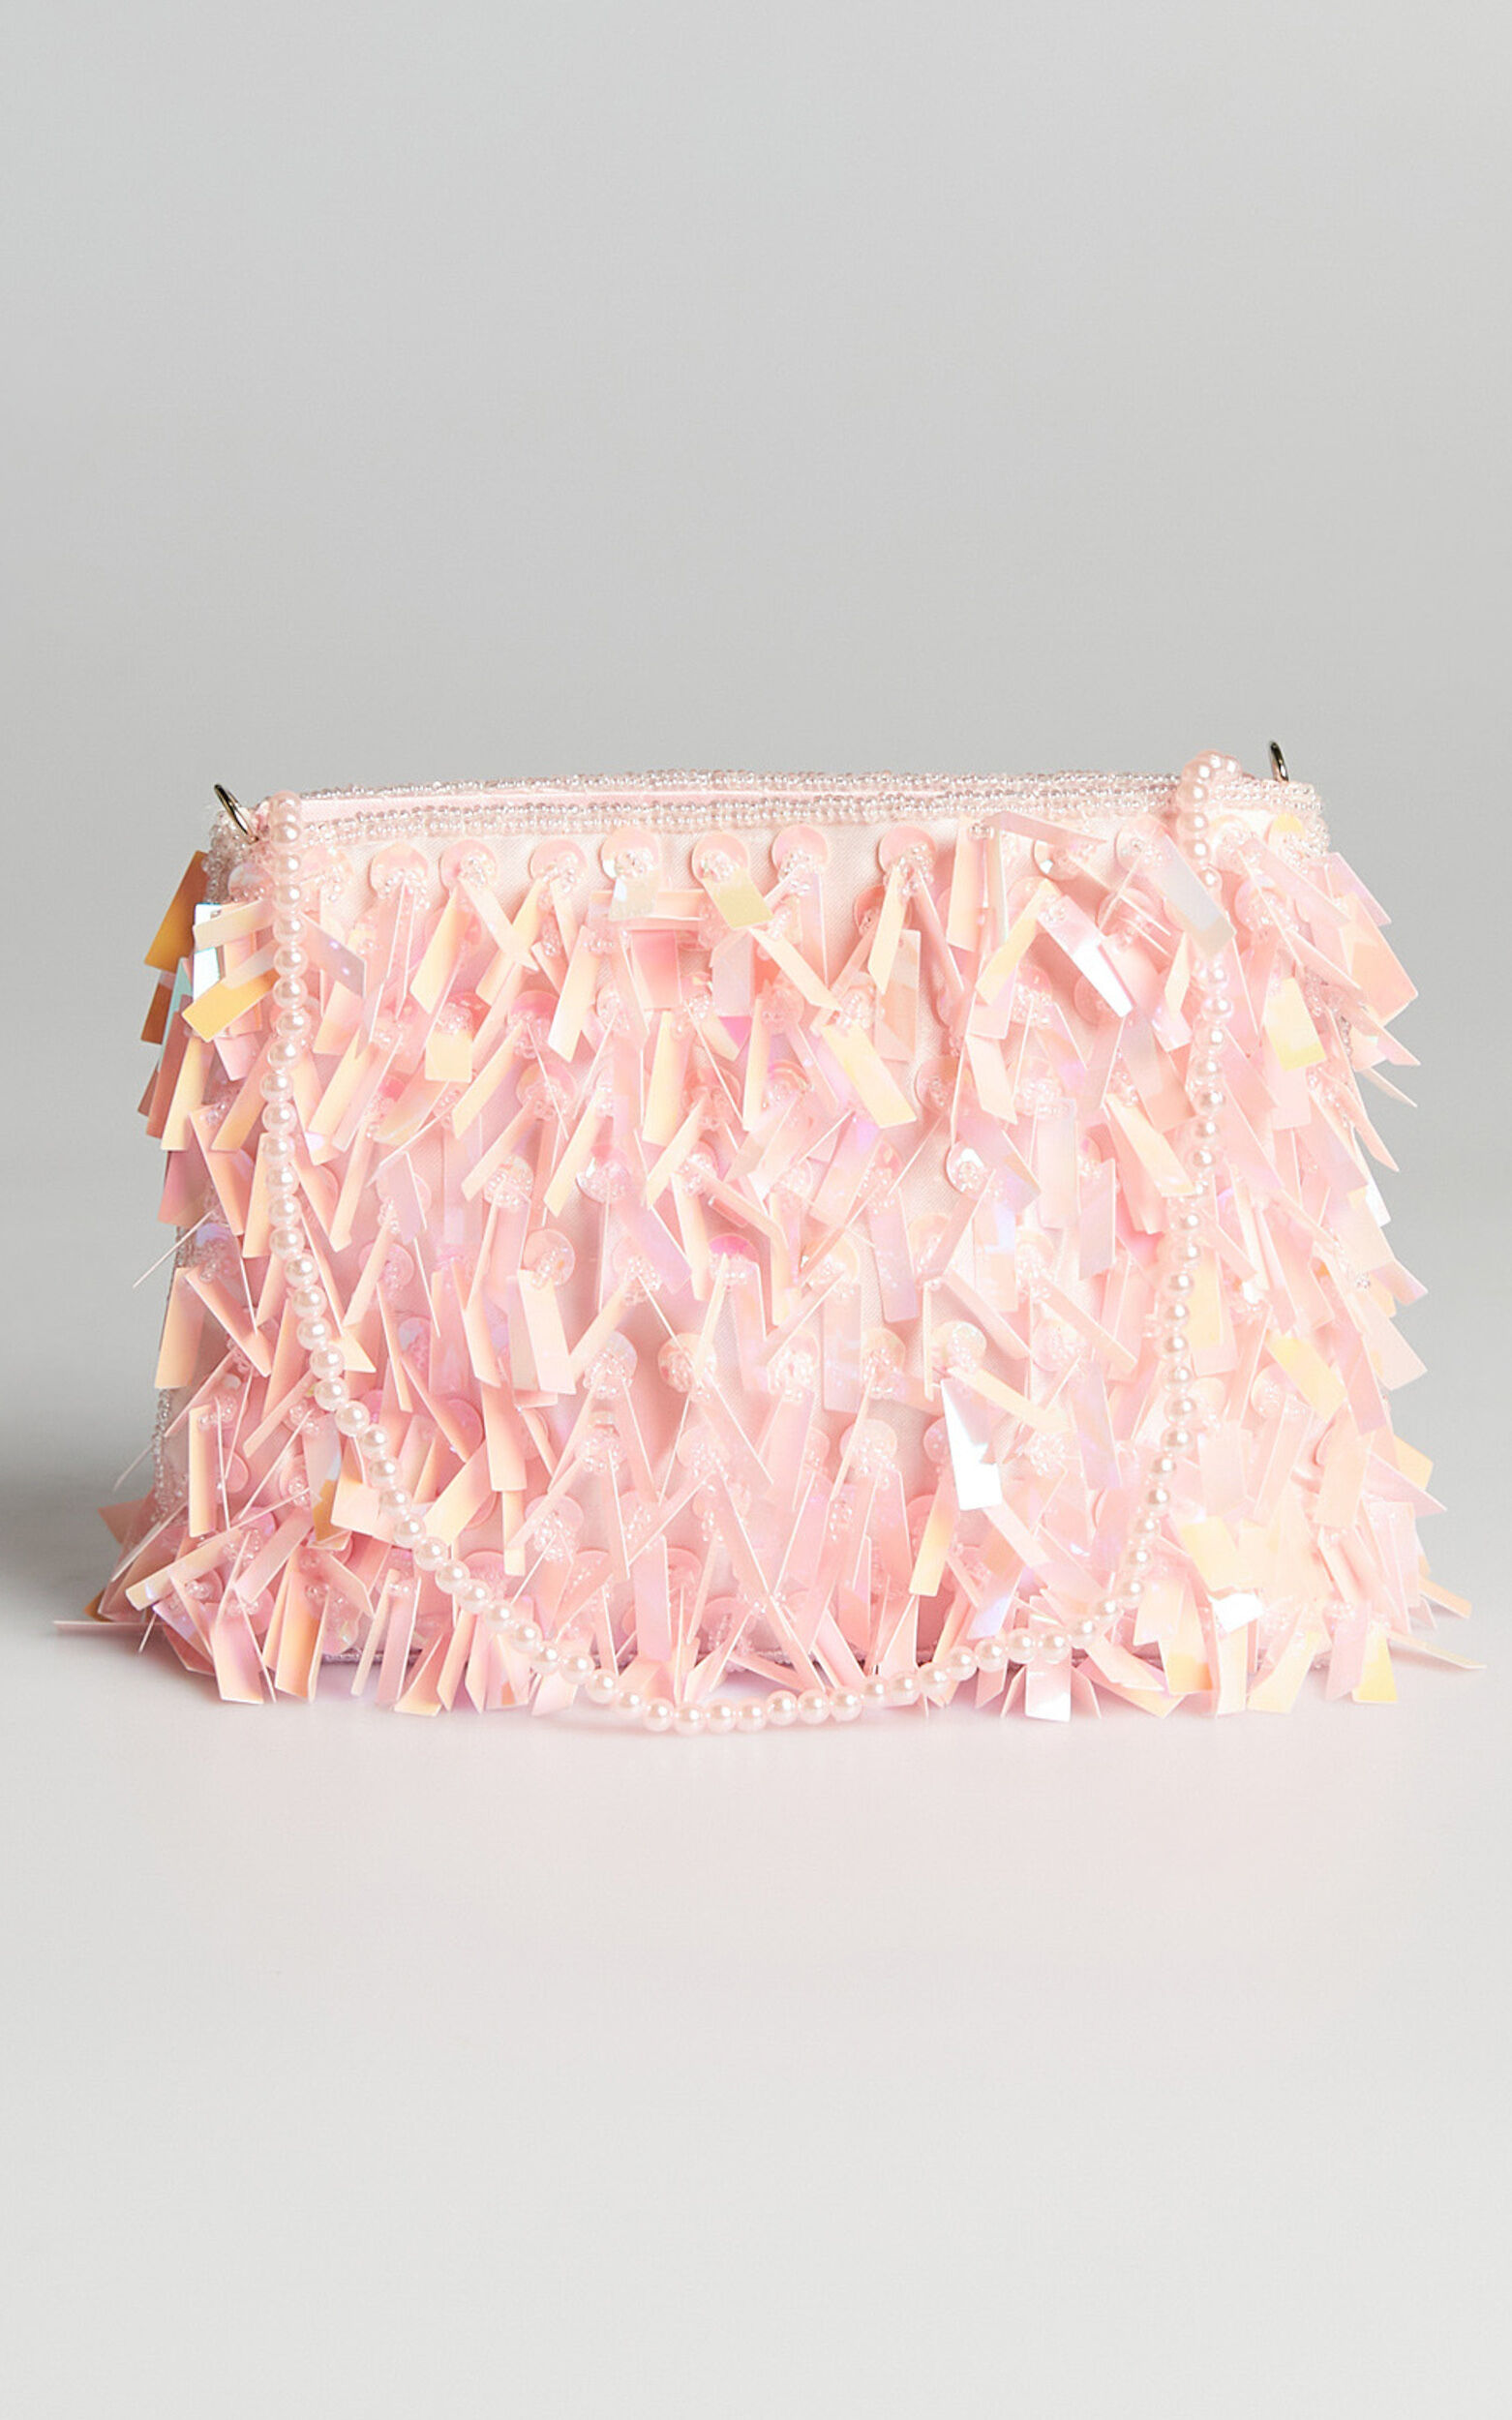 Dillima Embellished Bag in Pink - NoSize, PNK1, super-hi-res image number null